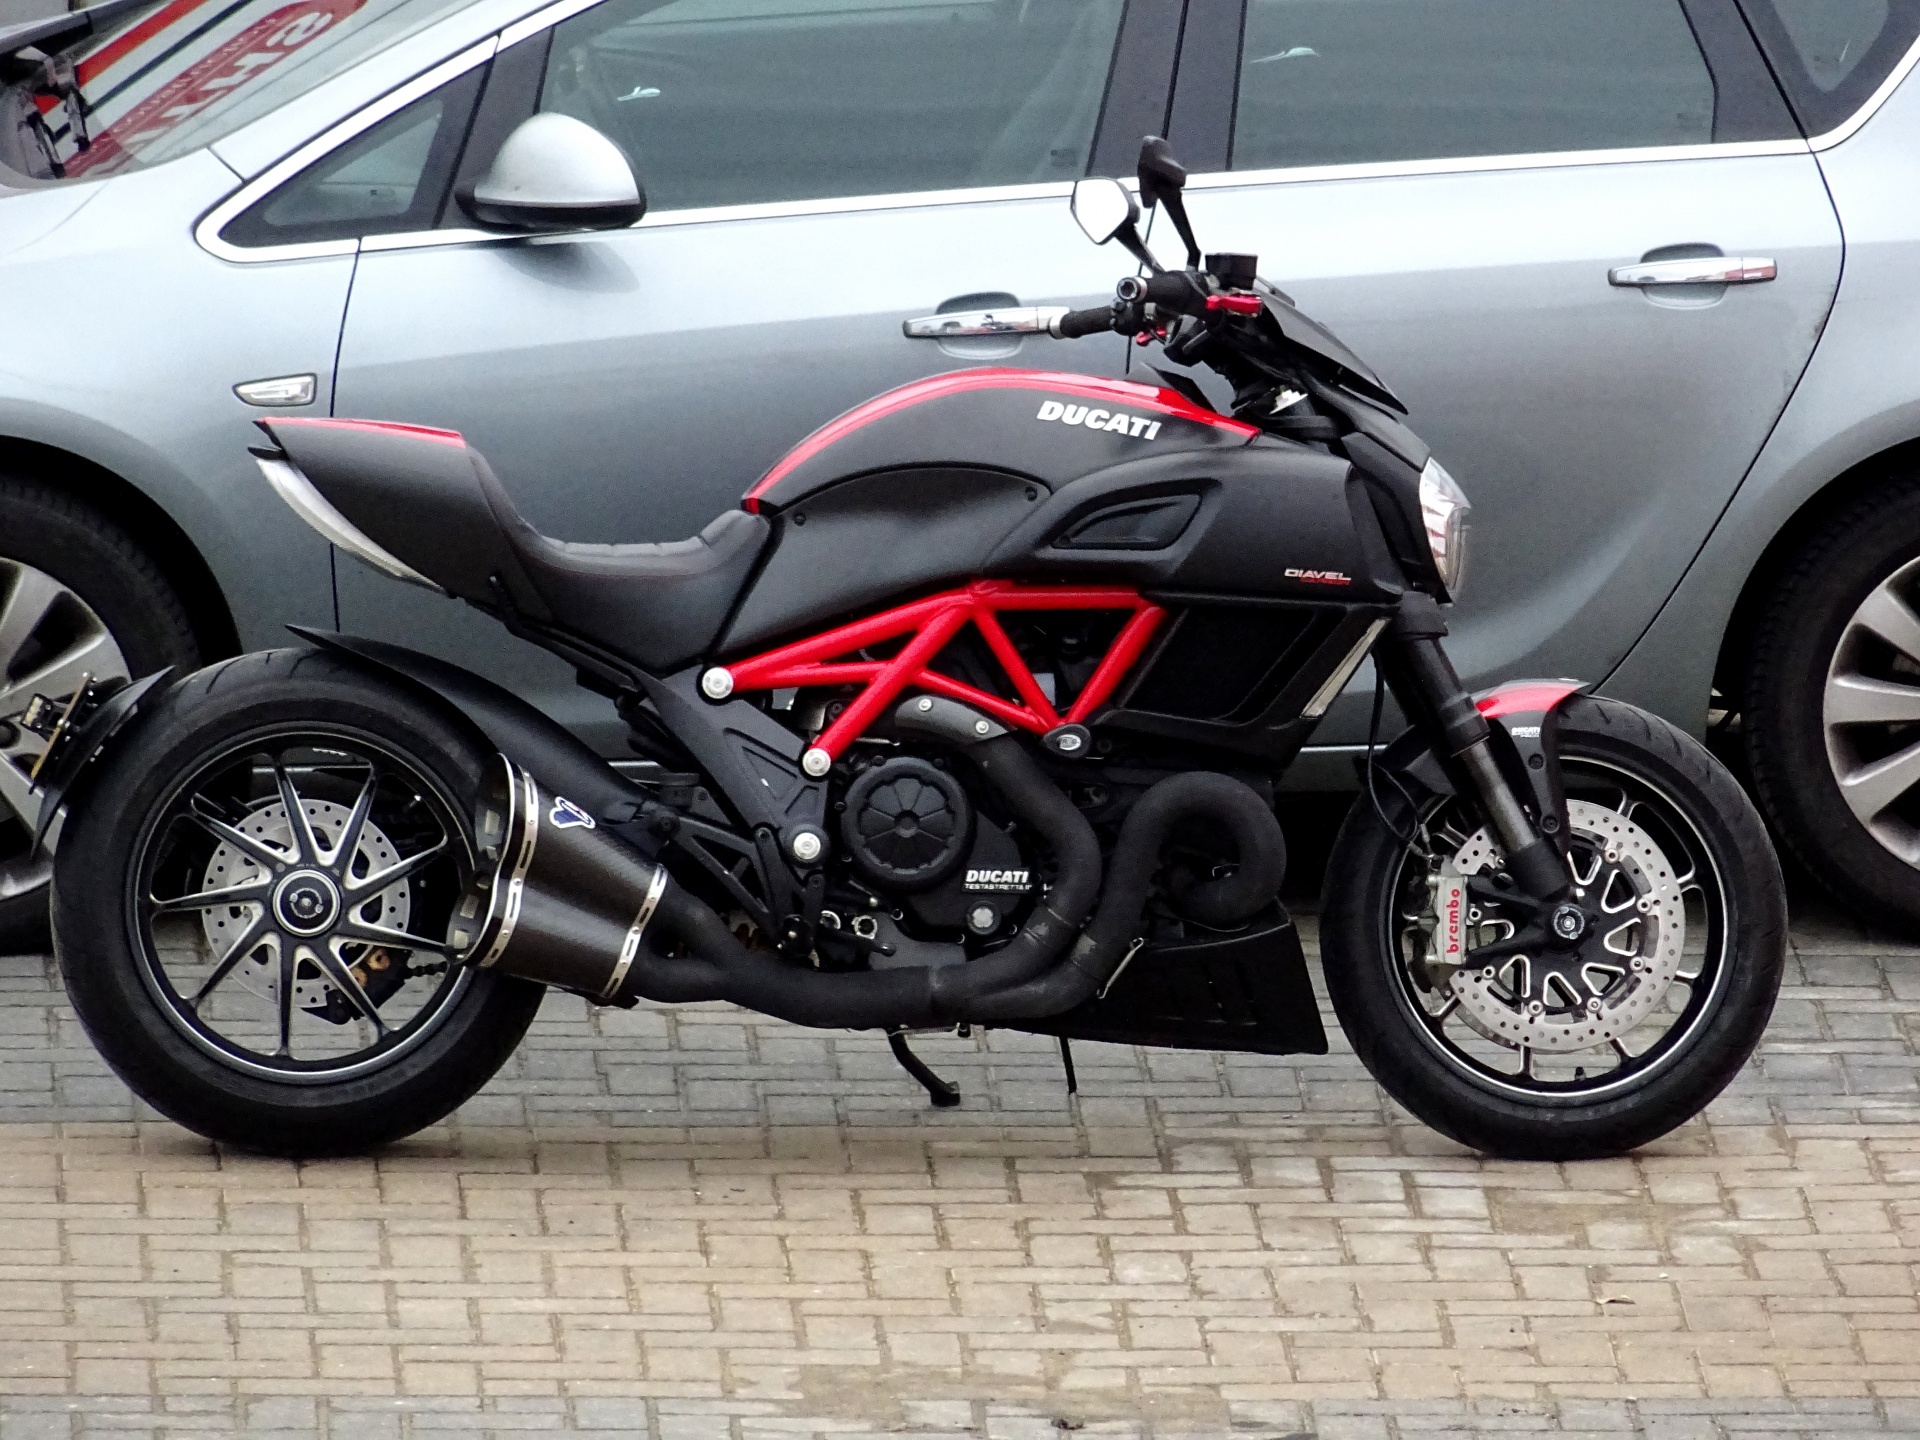 Sleek Ducati Motorcycle